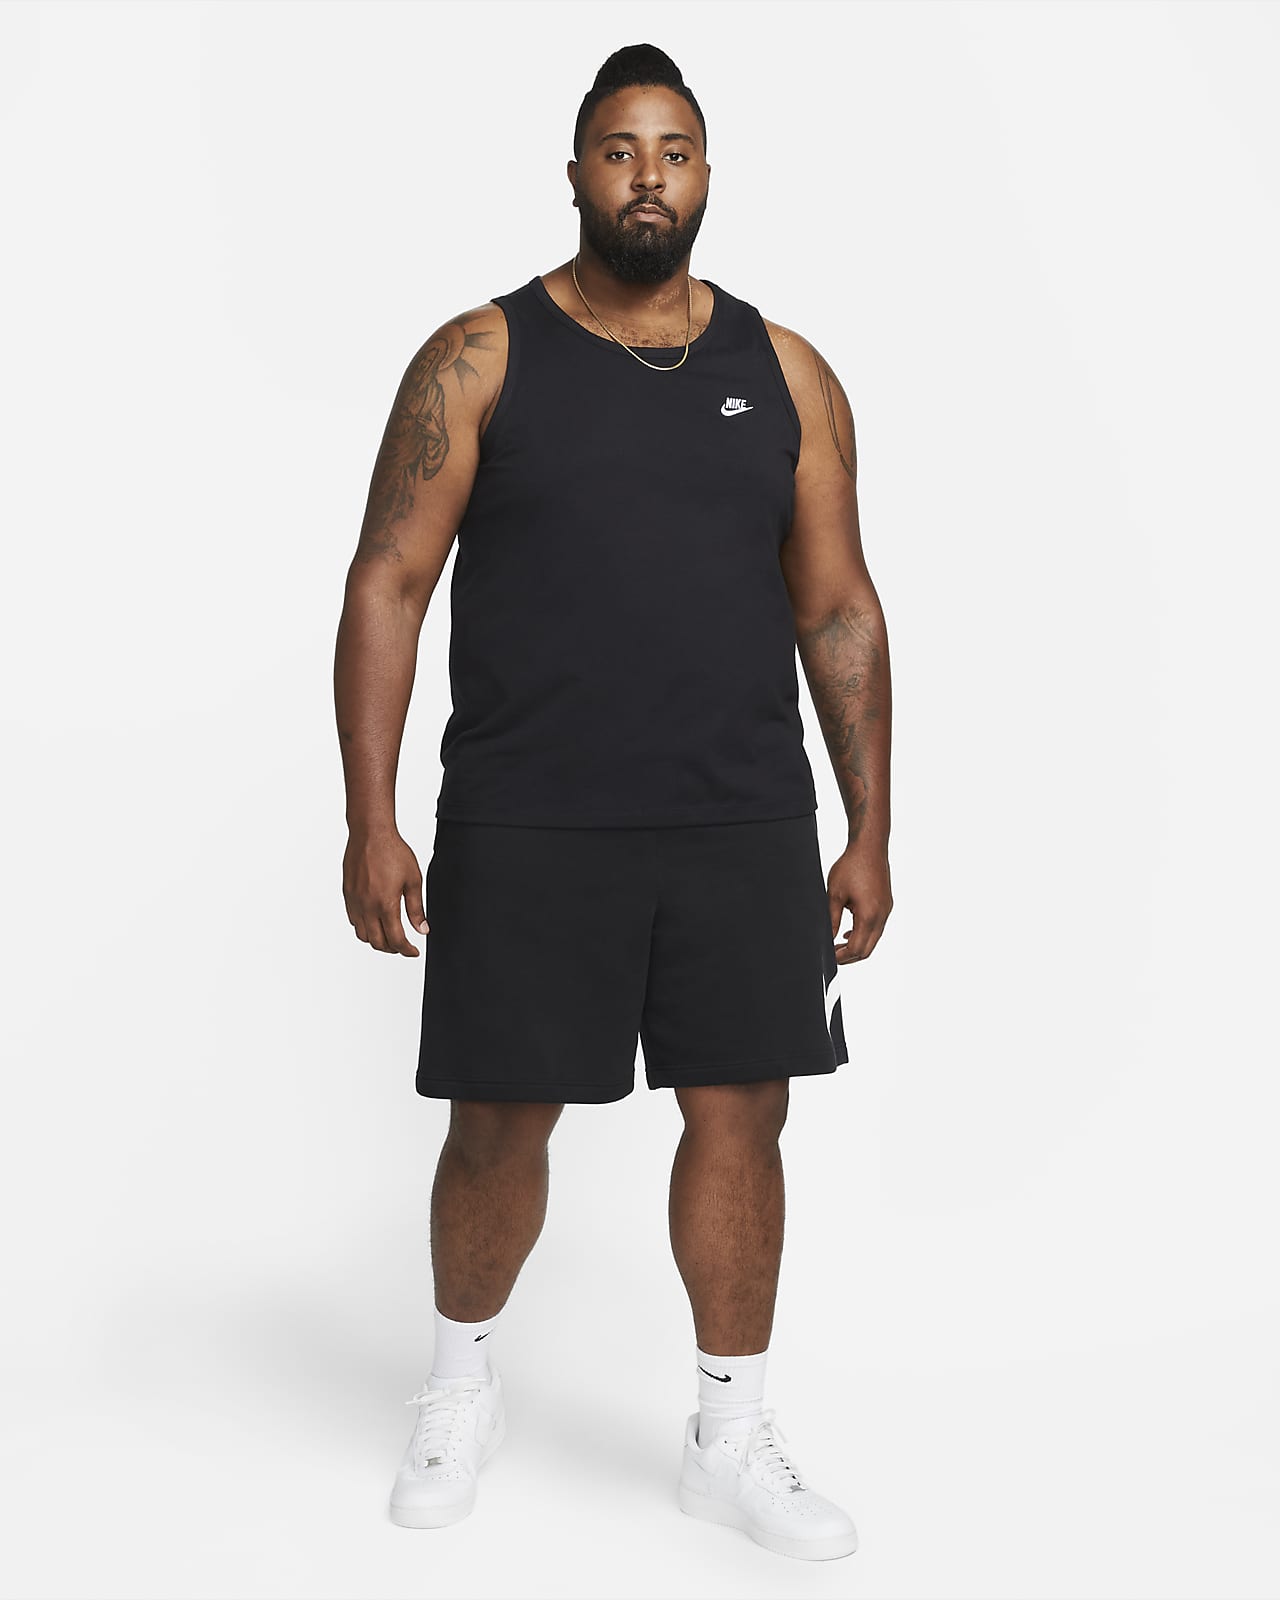 Nike Sportswear Men's Tank.